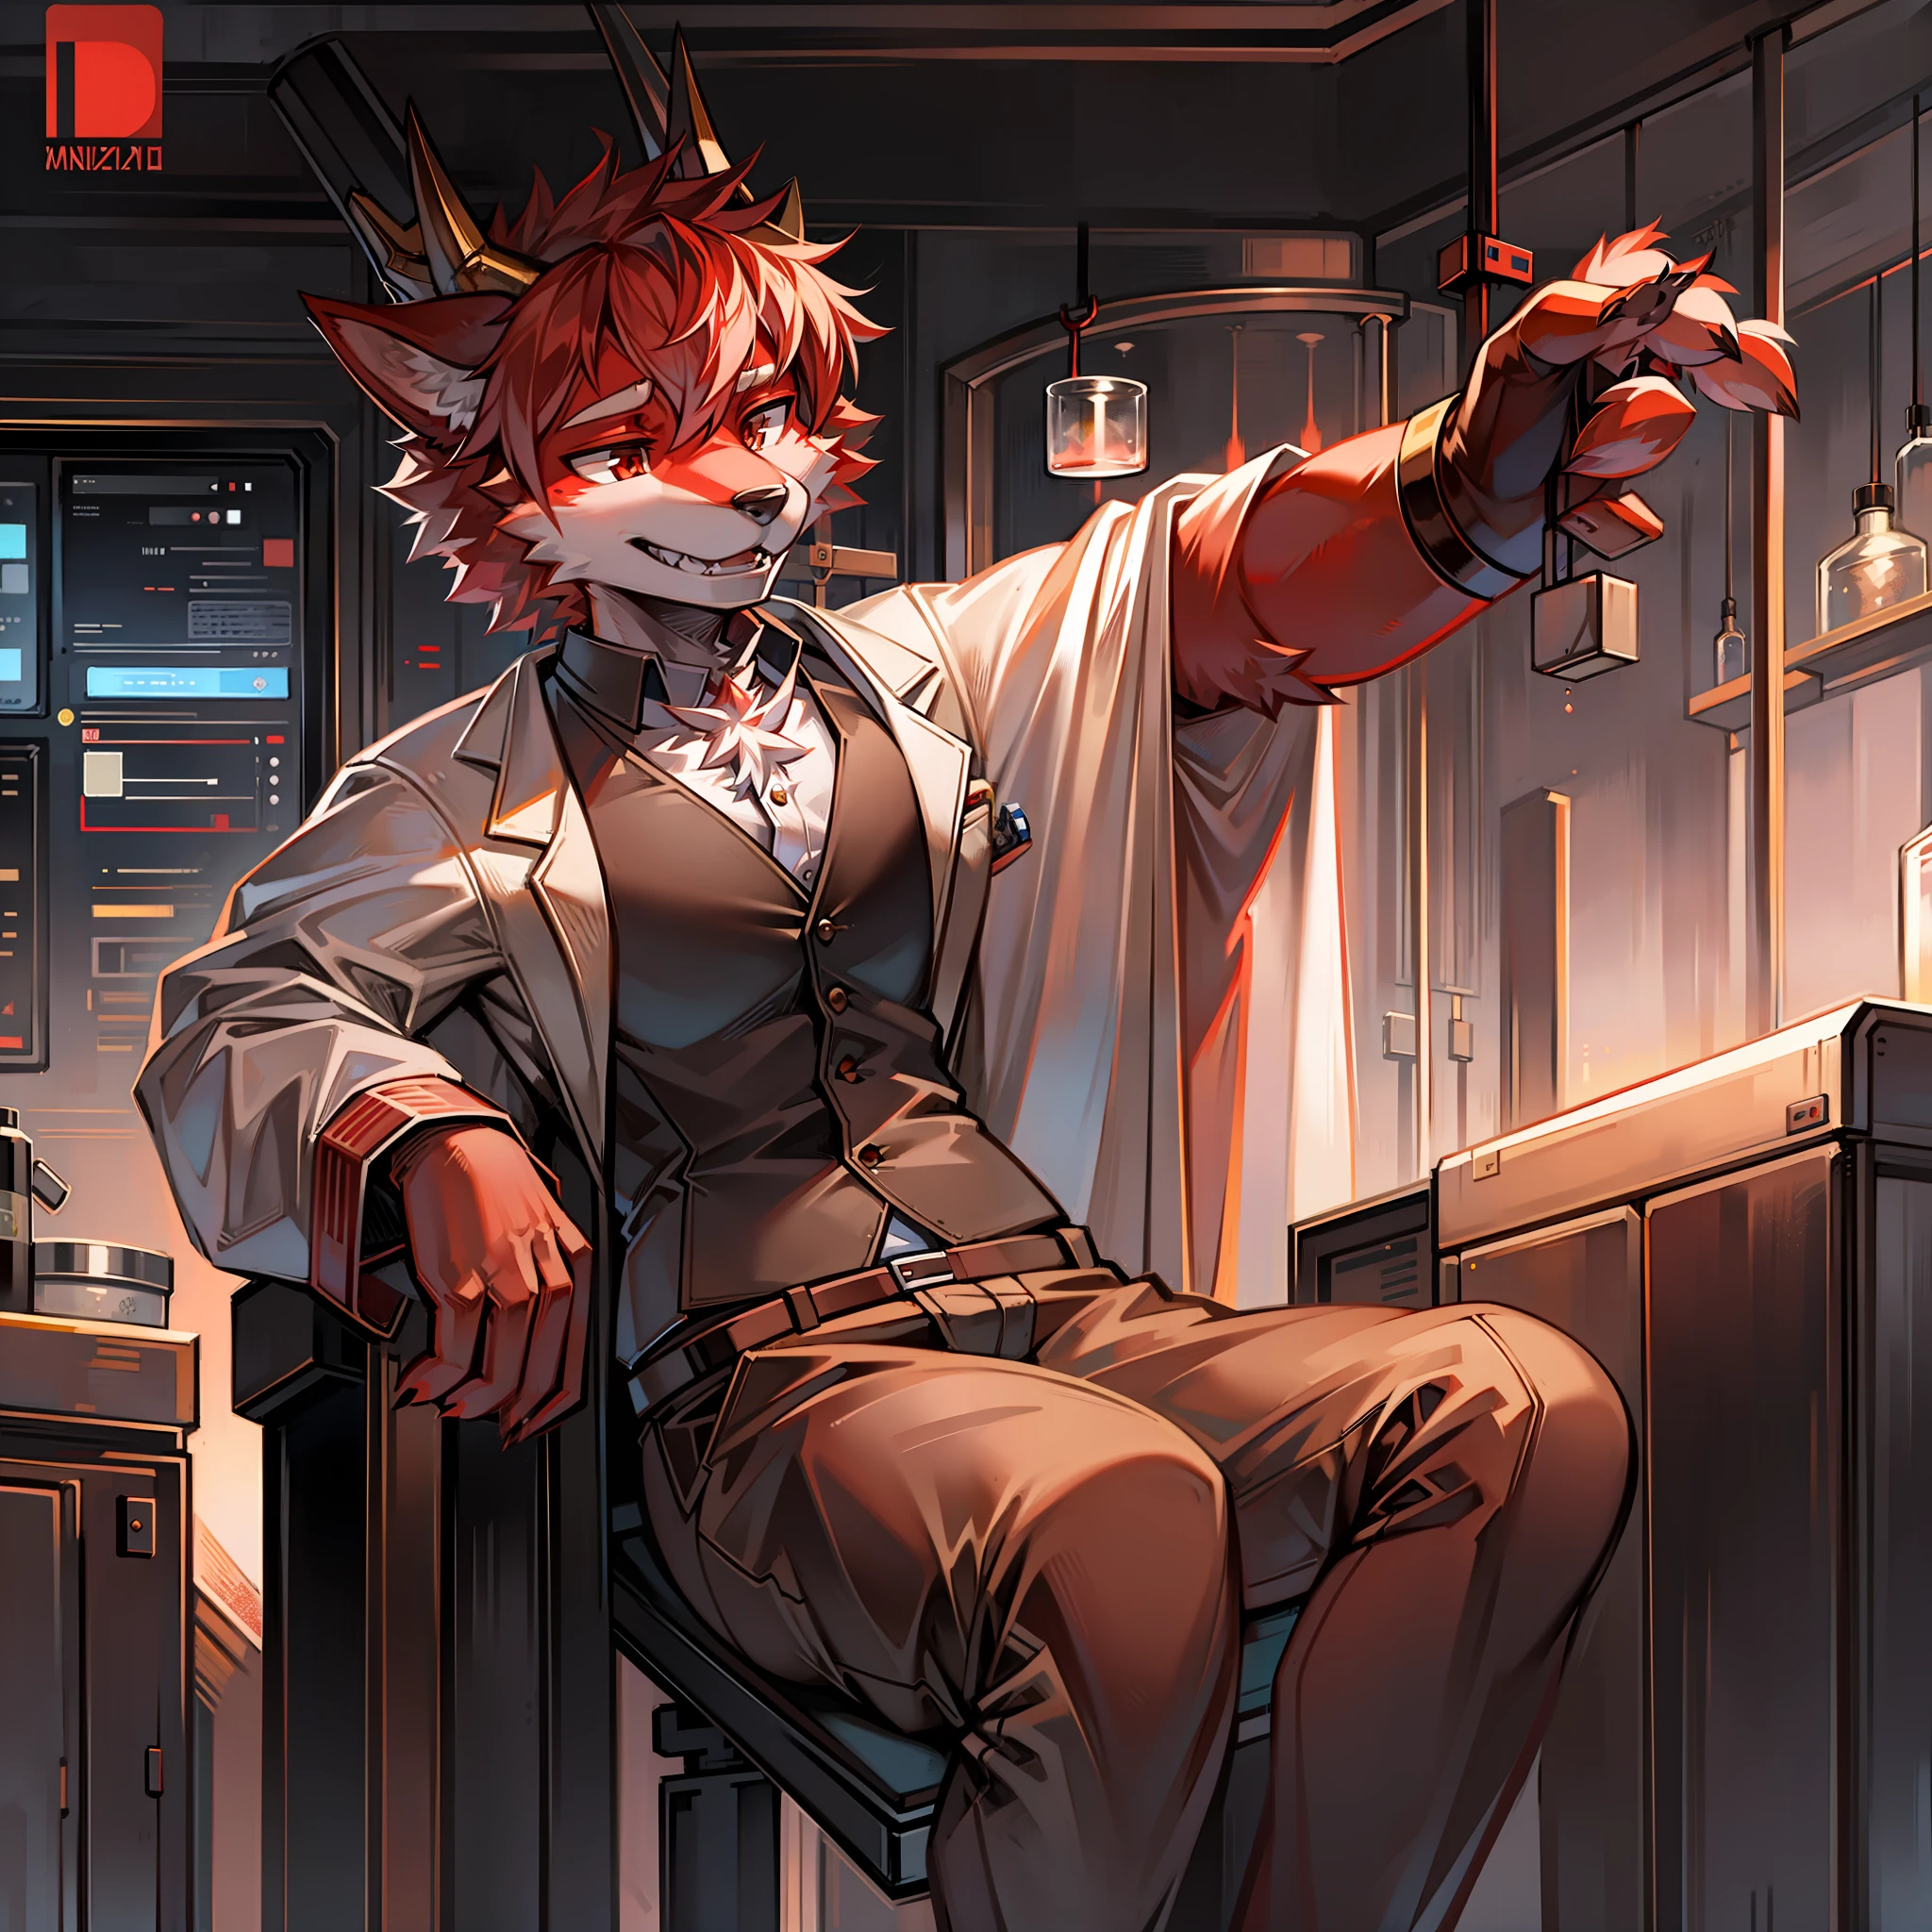 Furry Red Wolf vestido como um cientista em um laboratório com 4 chifres de dragão.